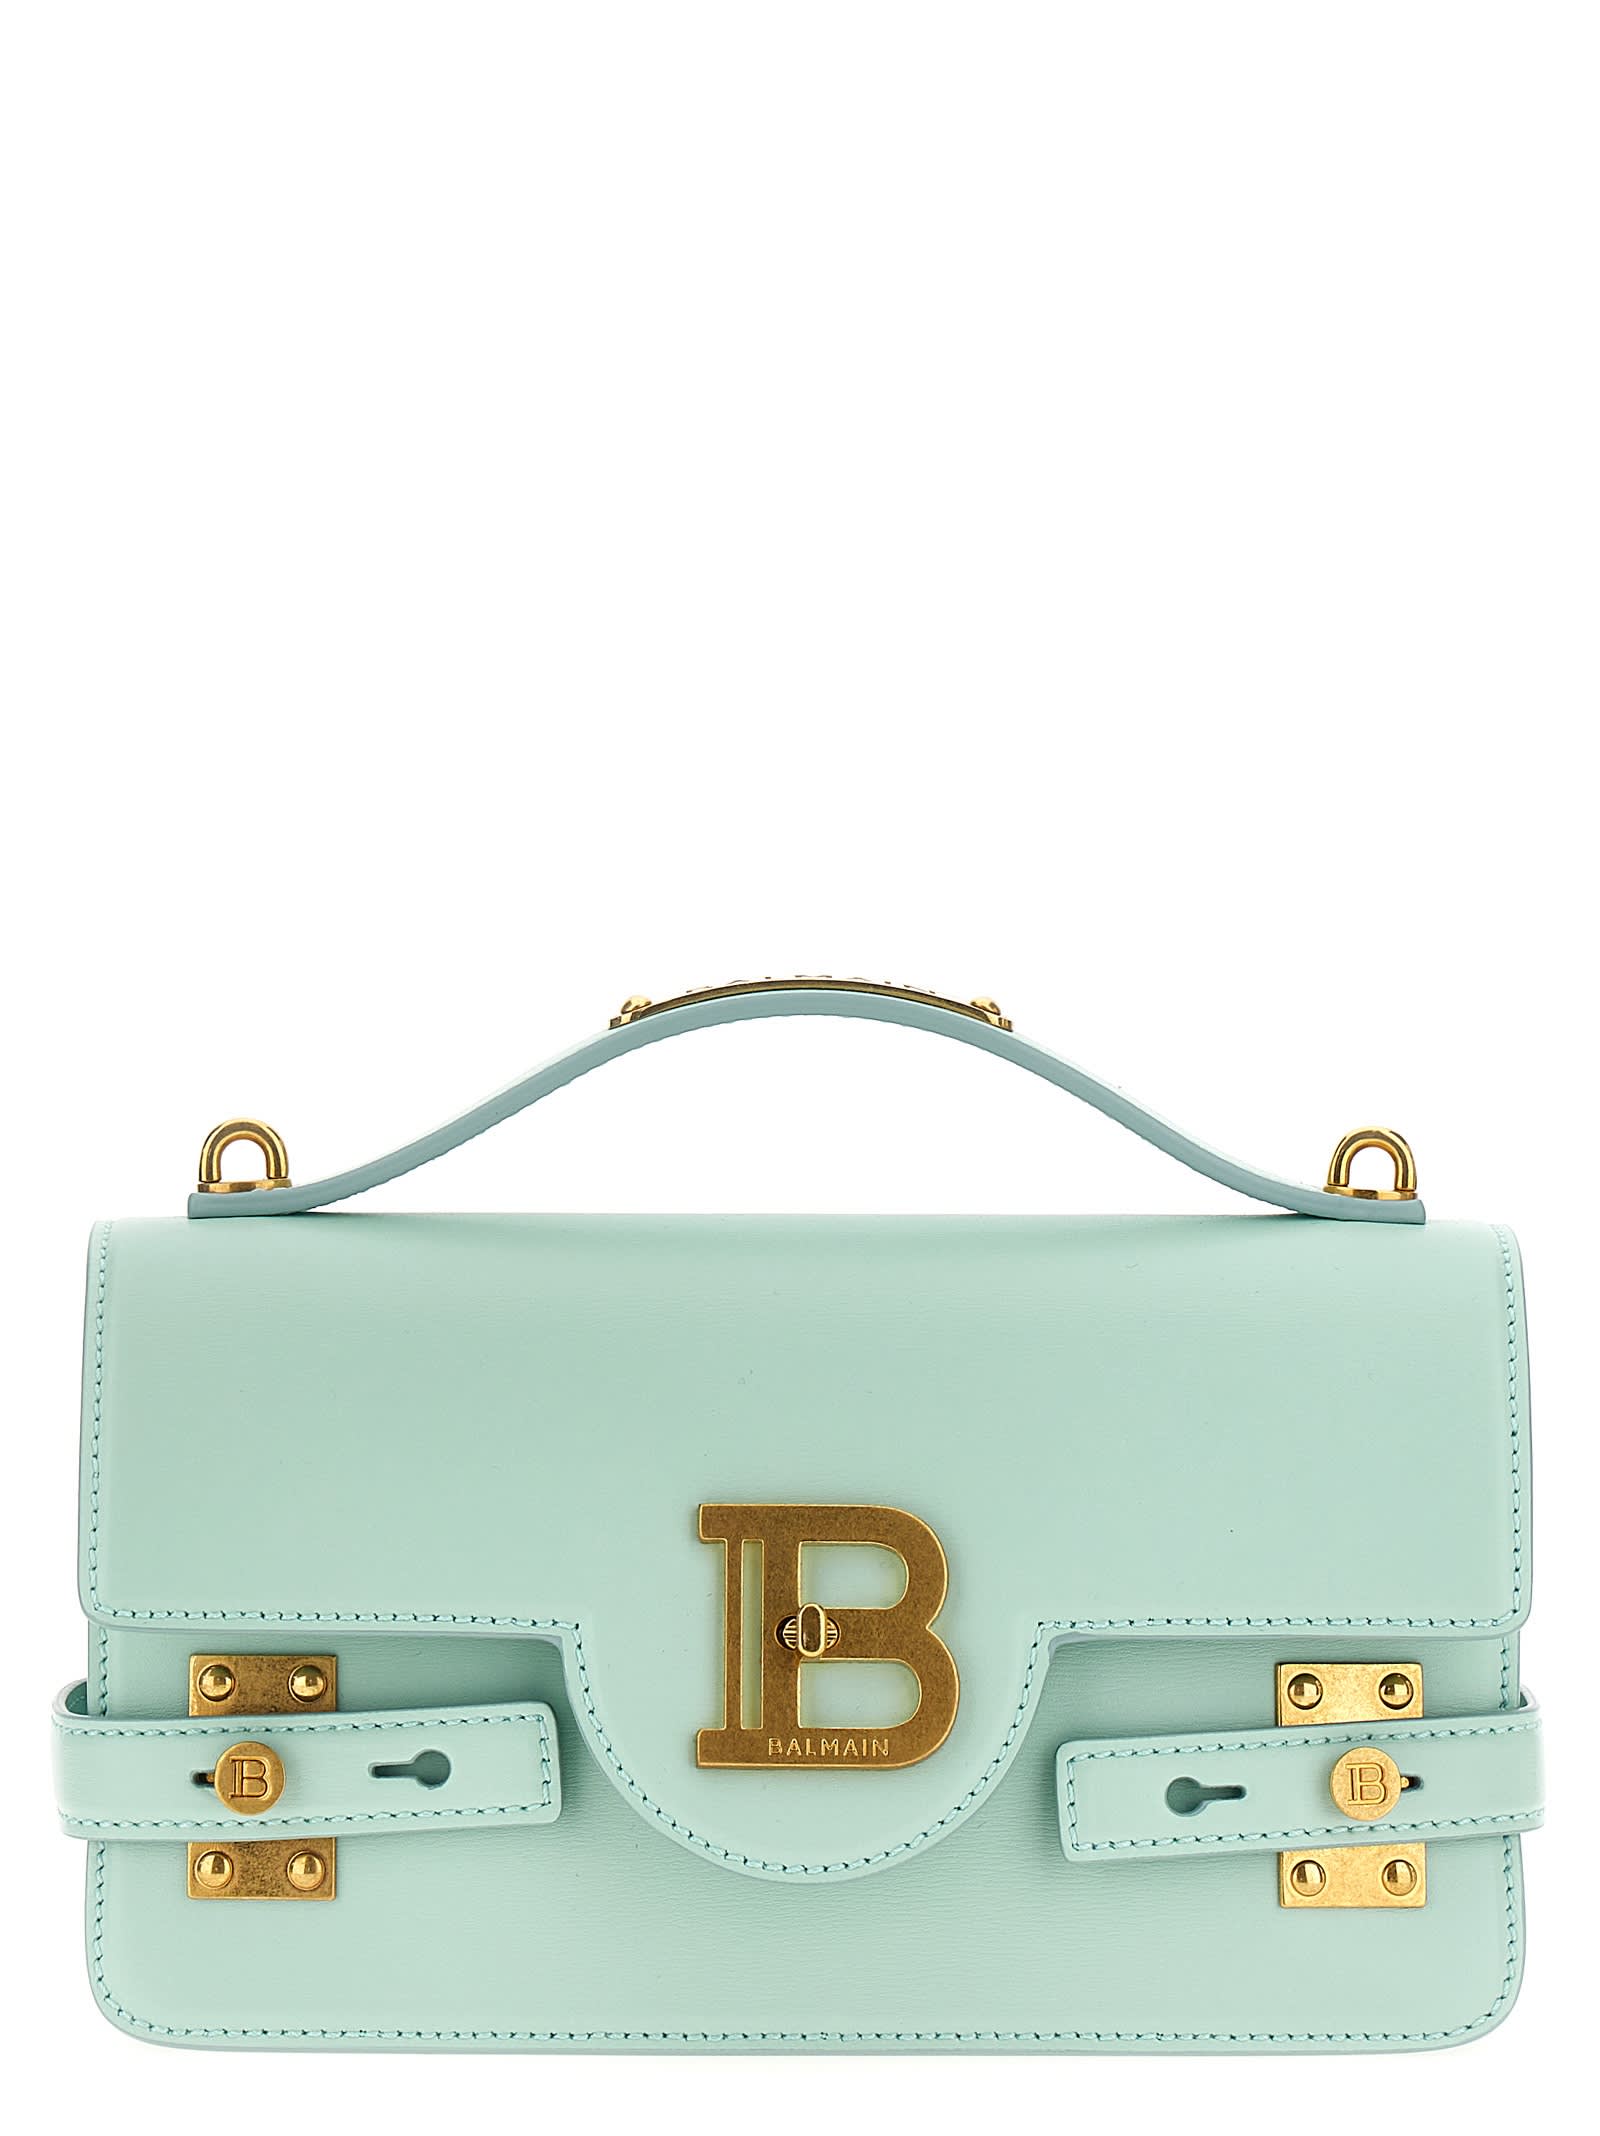 b-buzz 24 Handbag